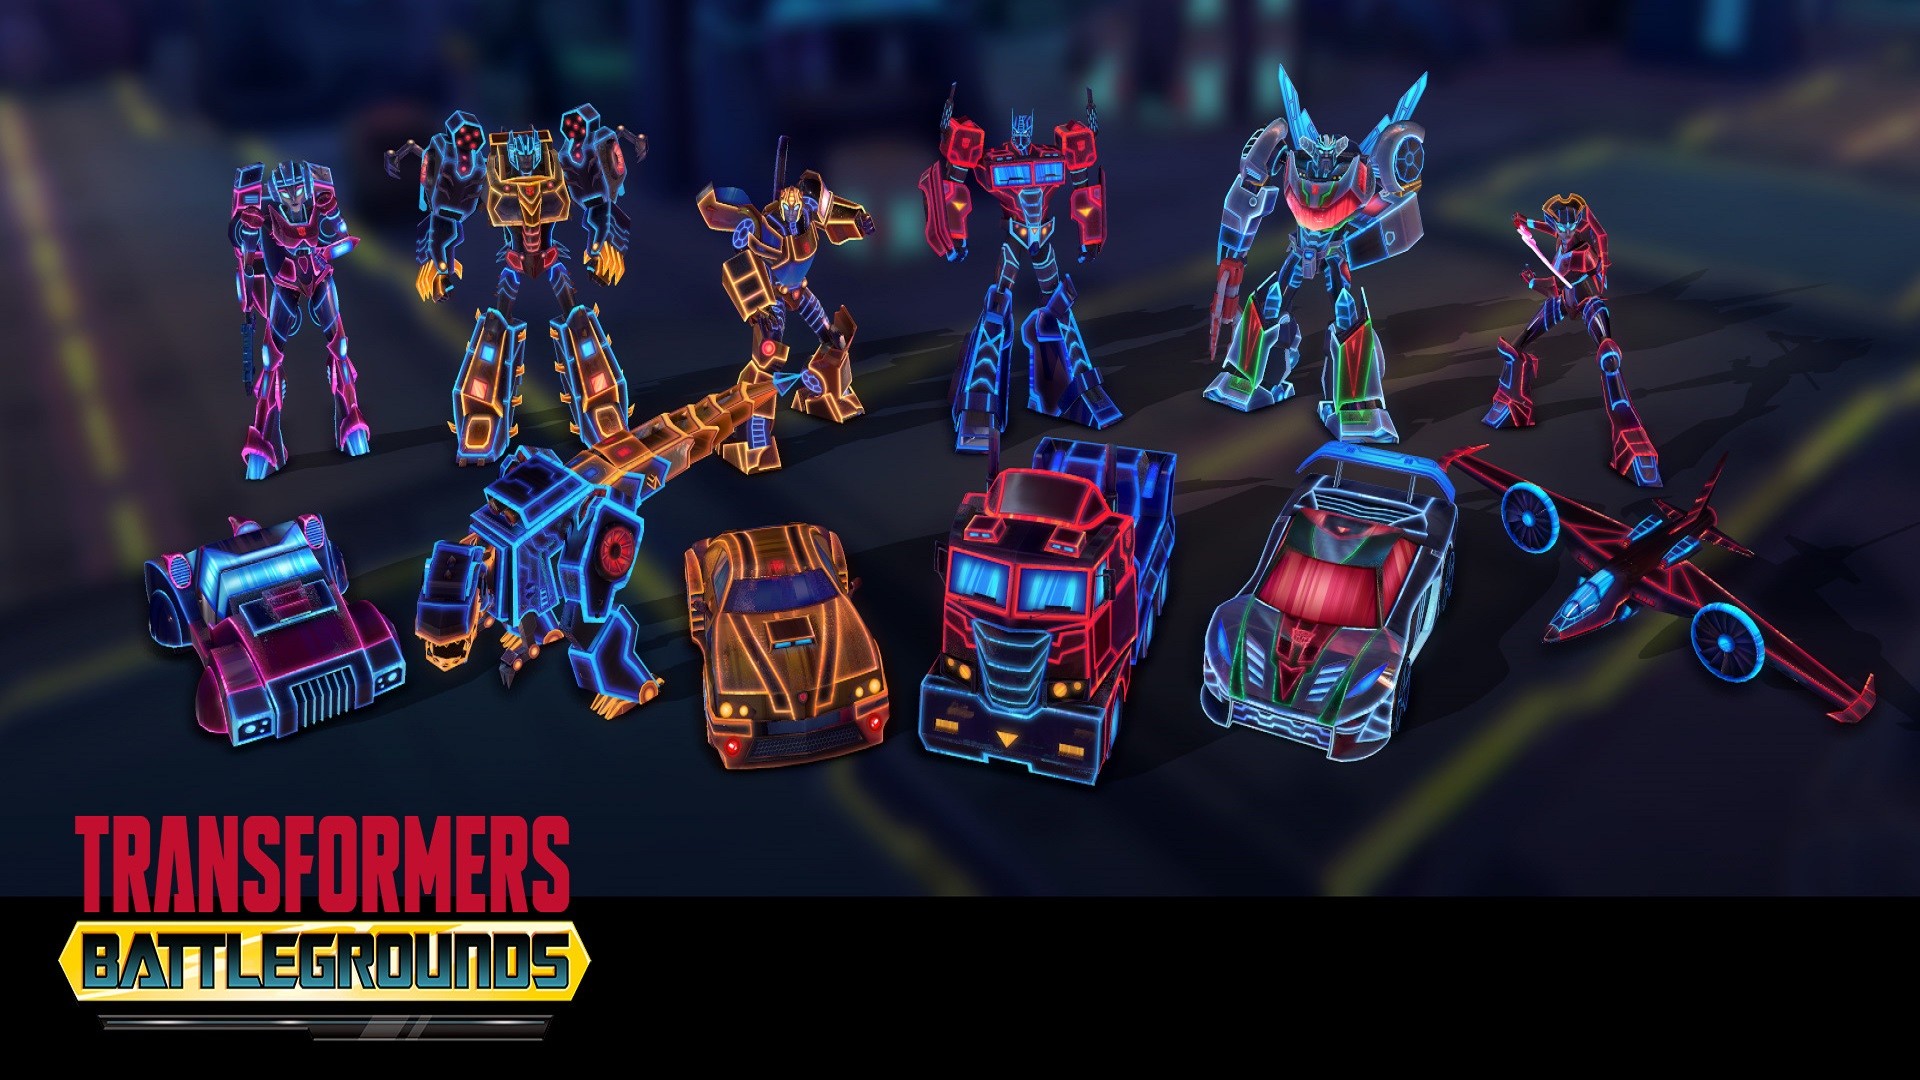 TRANSFORMERS: BATTLEGROUNDS - Neon Autobot Skin Pack Featured Screenshot #1